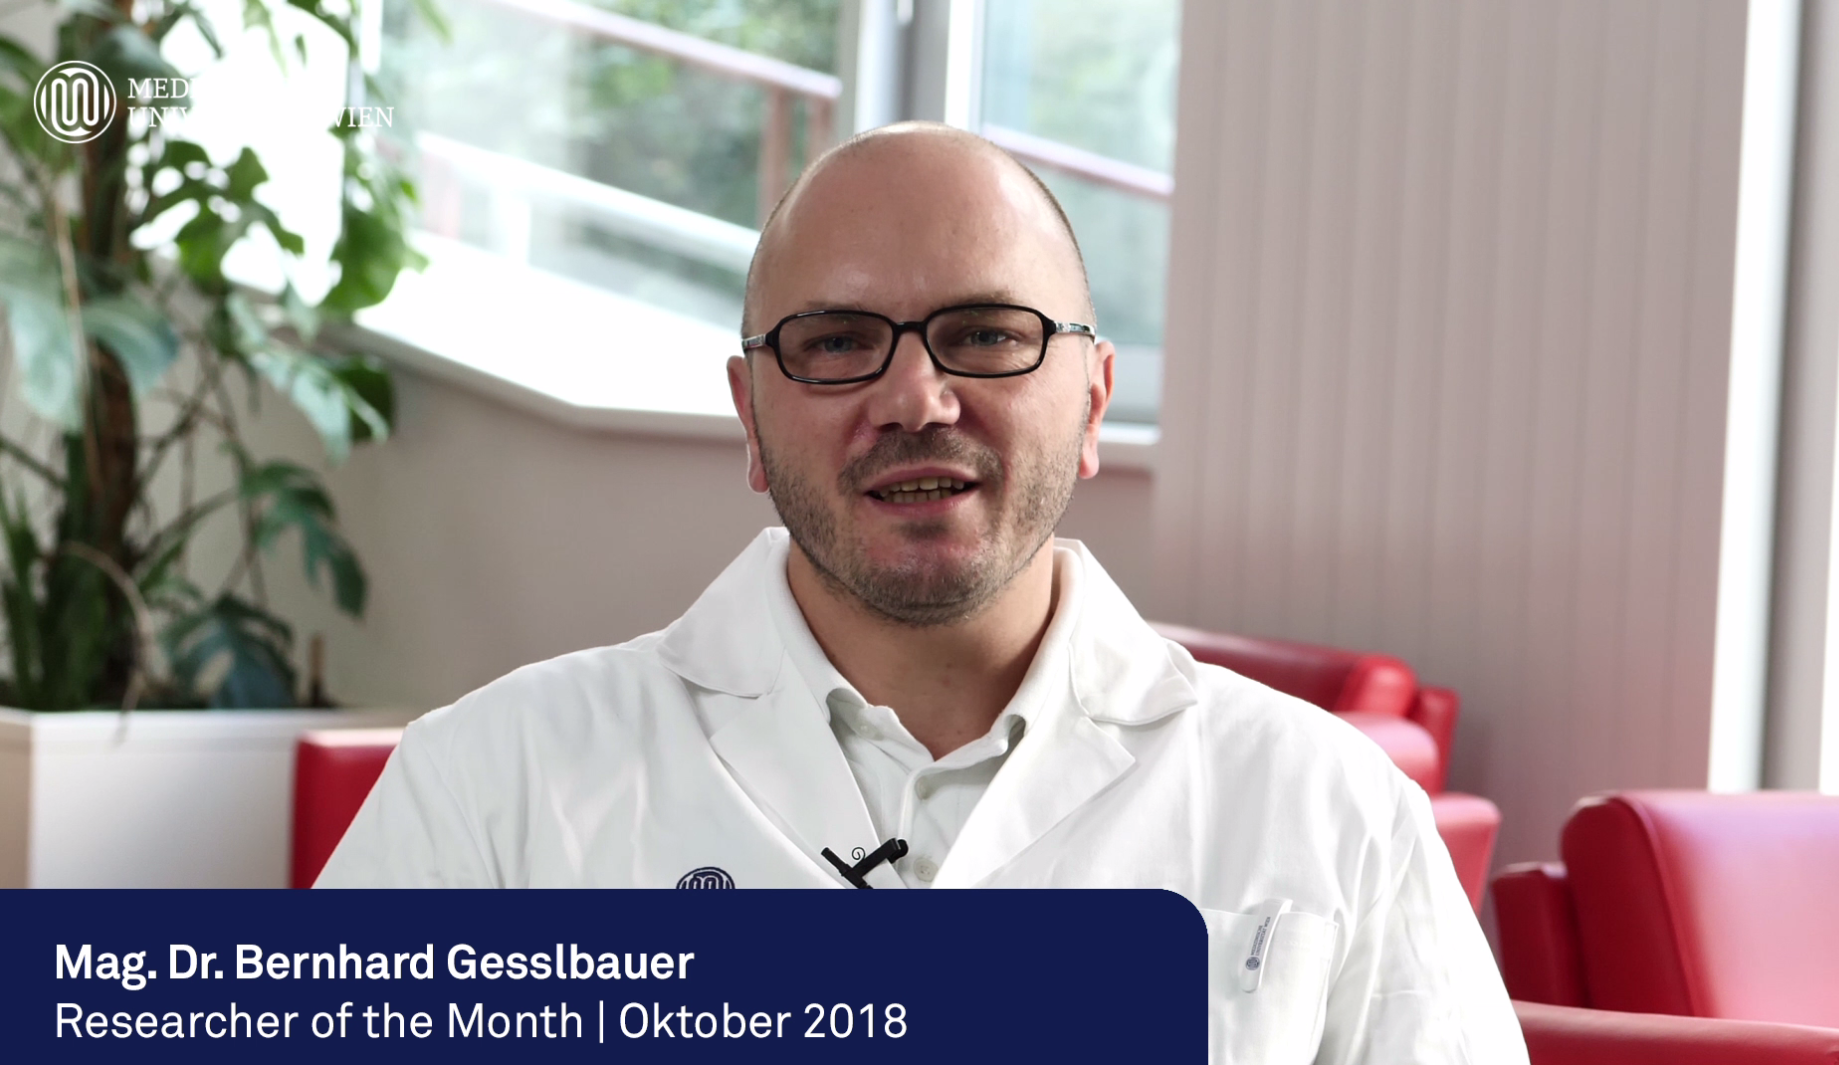 Mag. Dr. Bernhard Gesslbauer